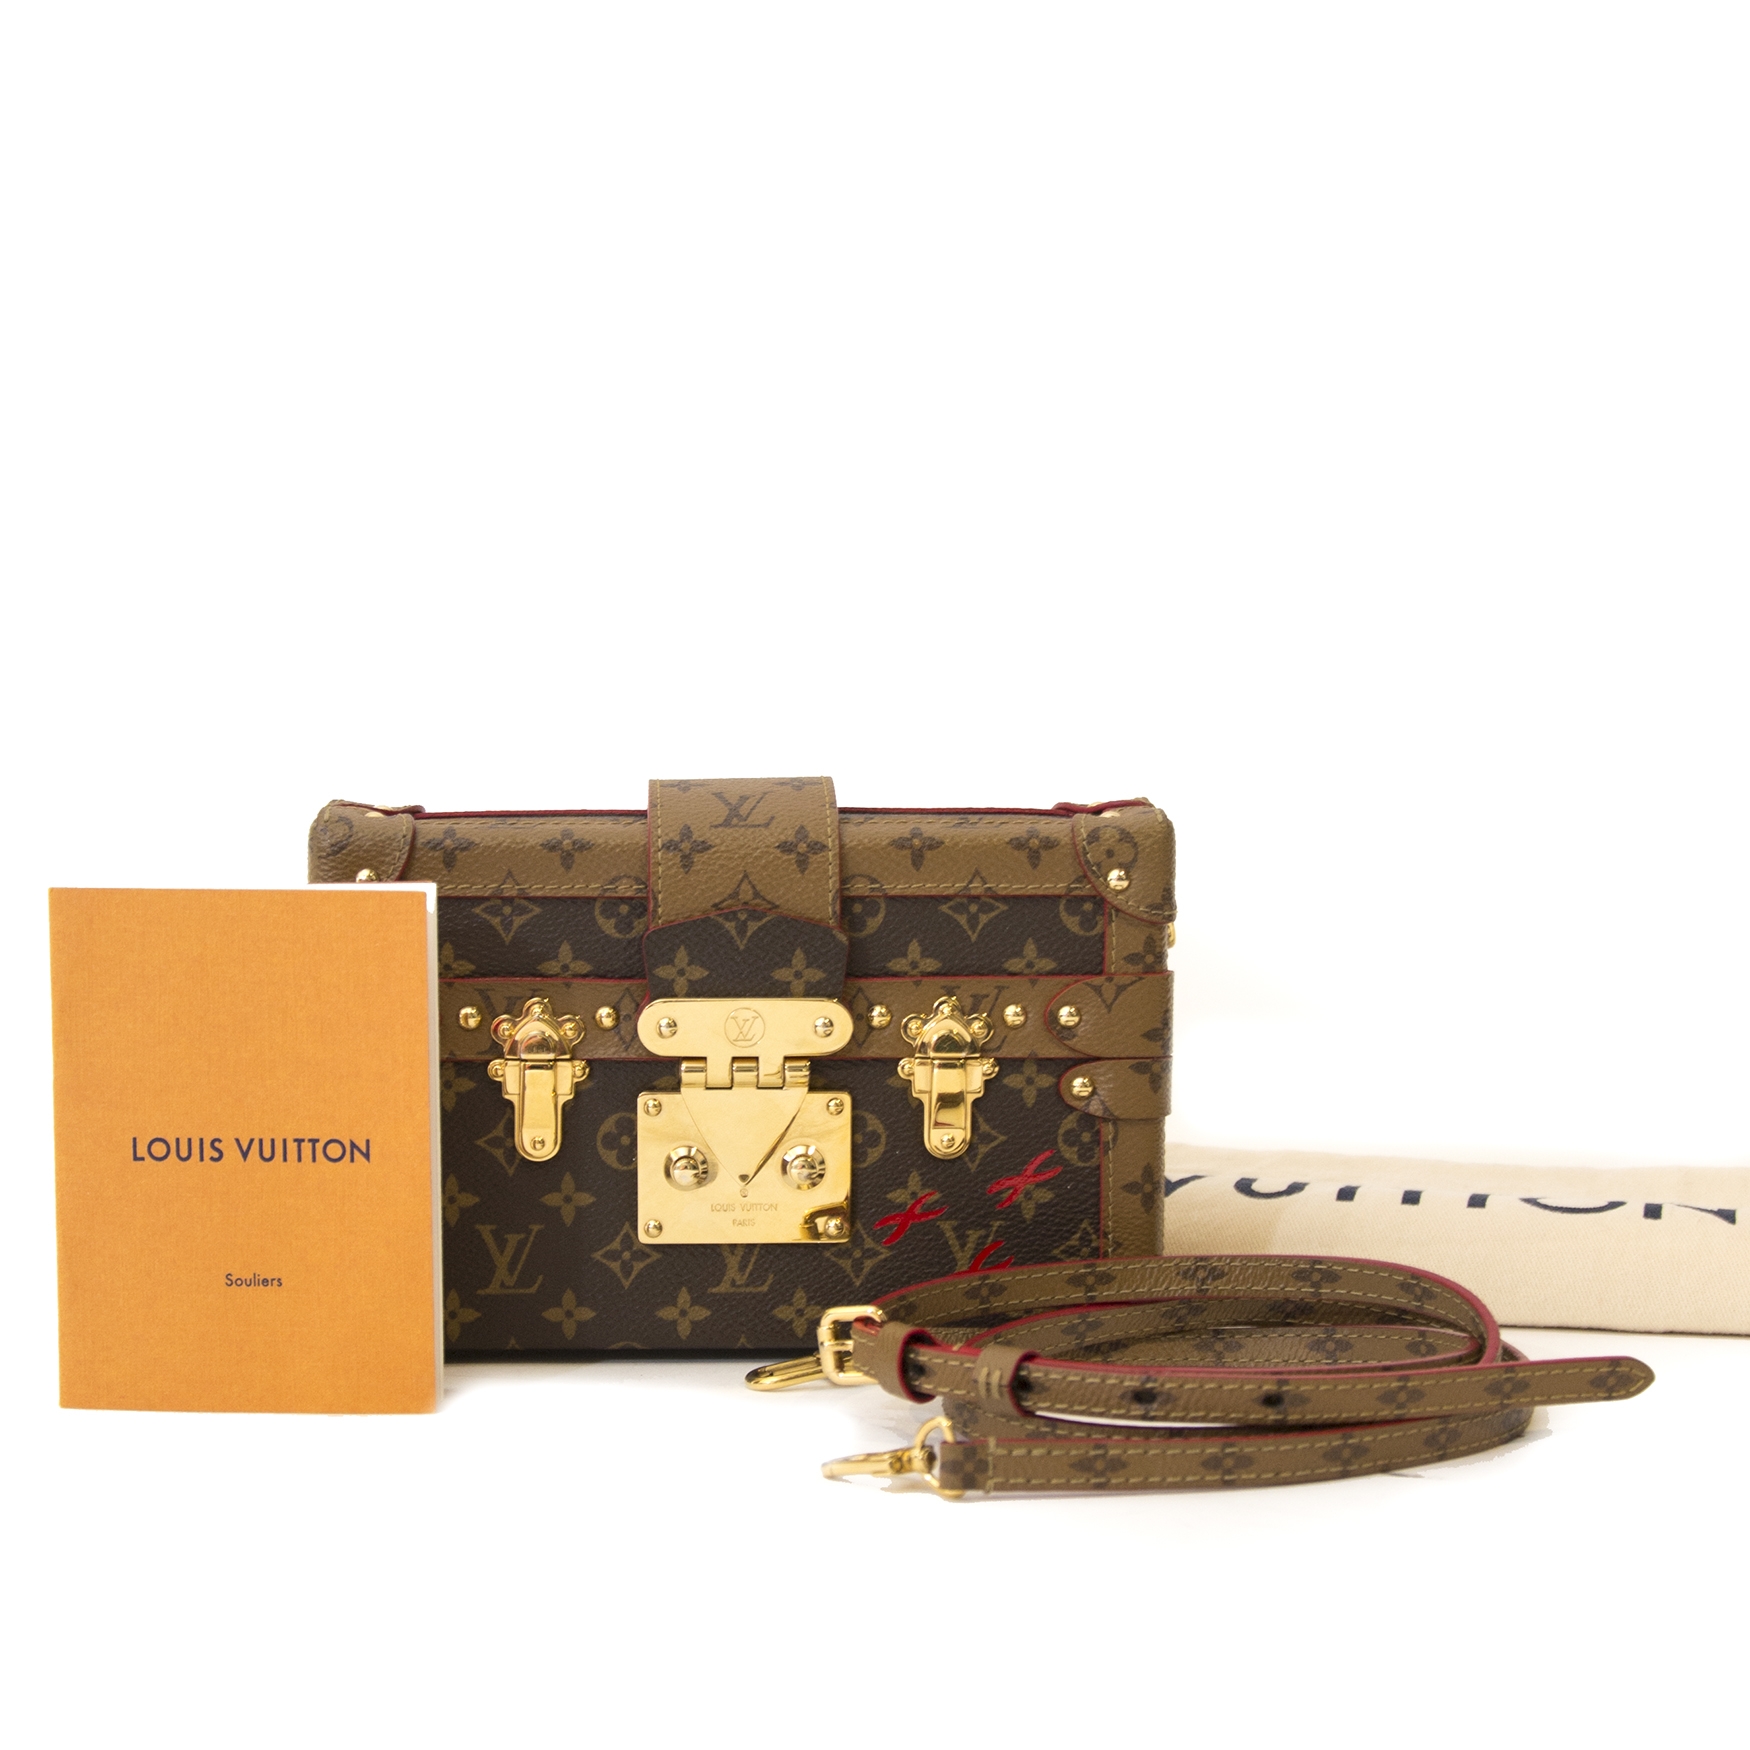 Louis Vuitton Petite Malle Capitale bag🌟 #louisvuitton #fall23  #petitemallecapitale #bag #fashion #style